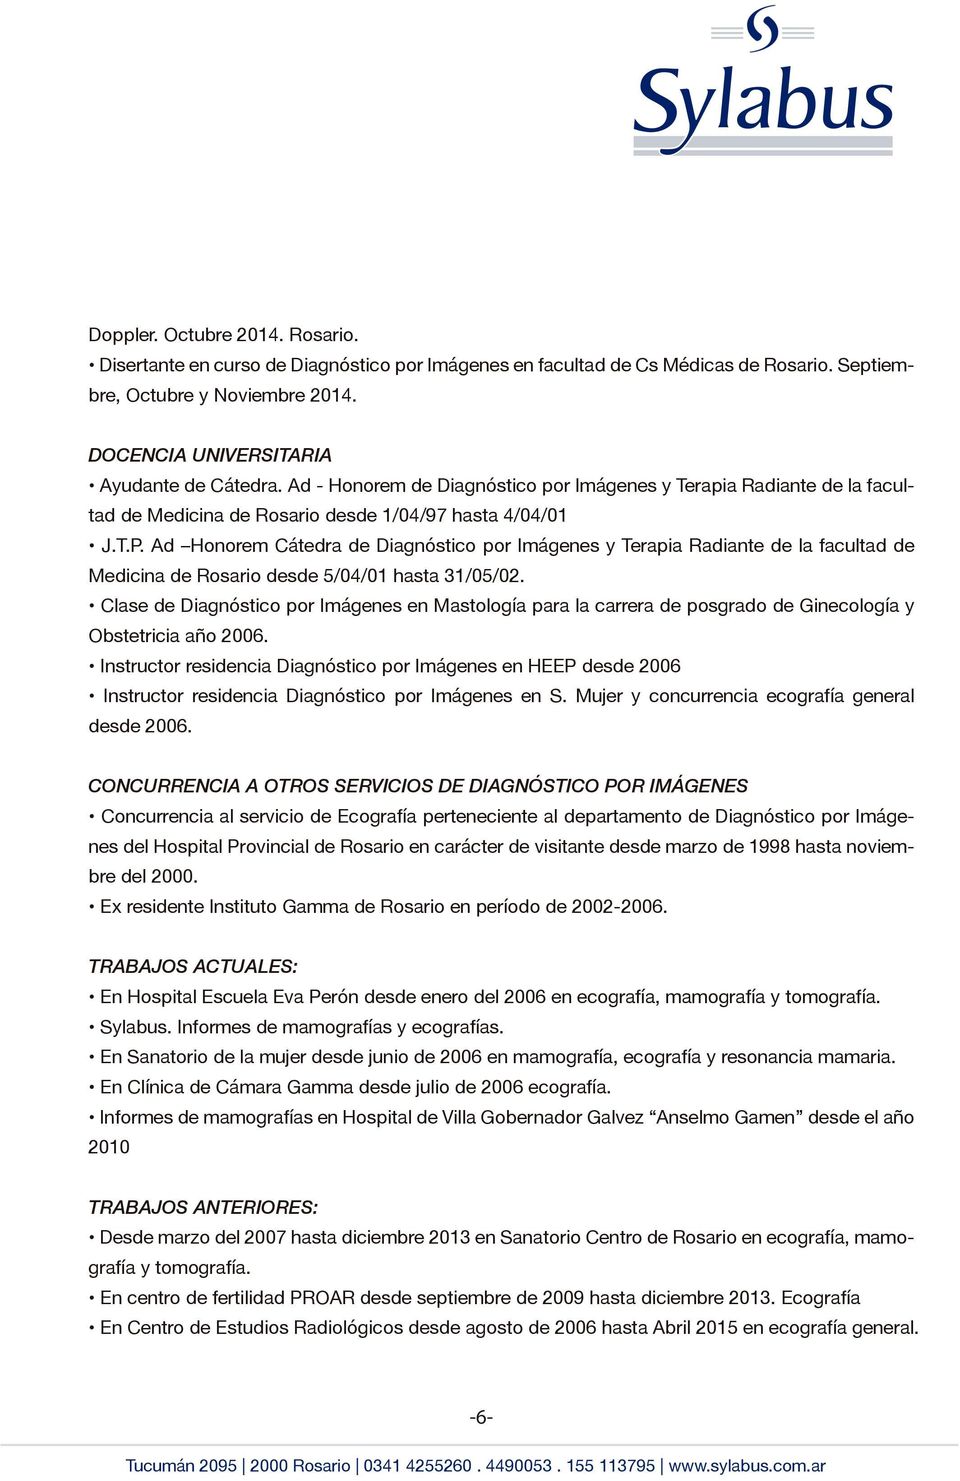 Ad Honorem Cátedra de Diagnóstico por Imágenes y Terapia Radiante de la facultad de Medicina de Rosario desde 5/04/01 hasta 31/05/02.